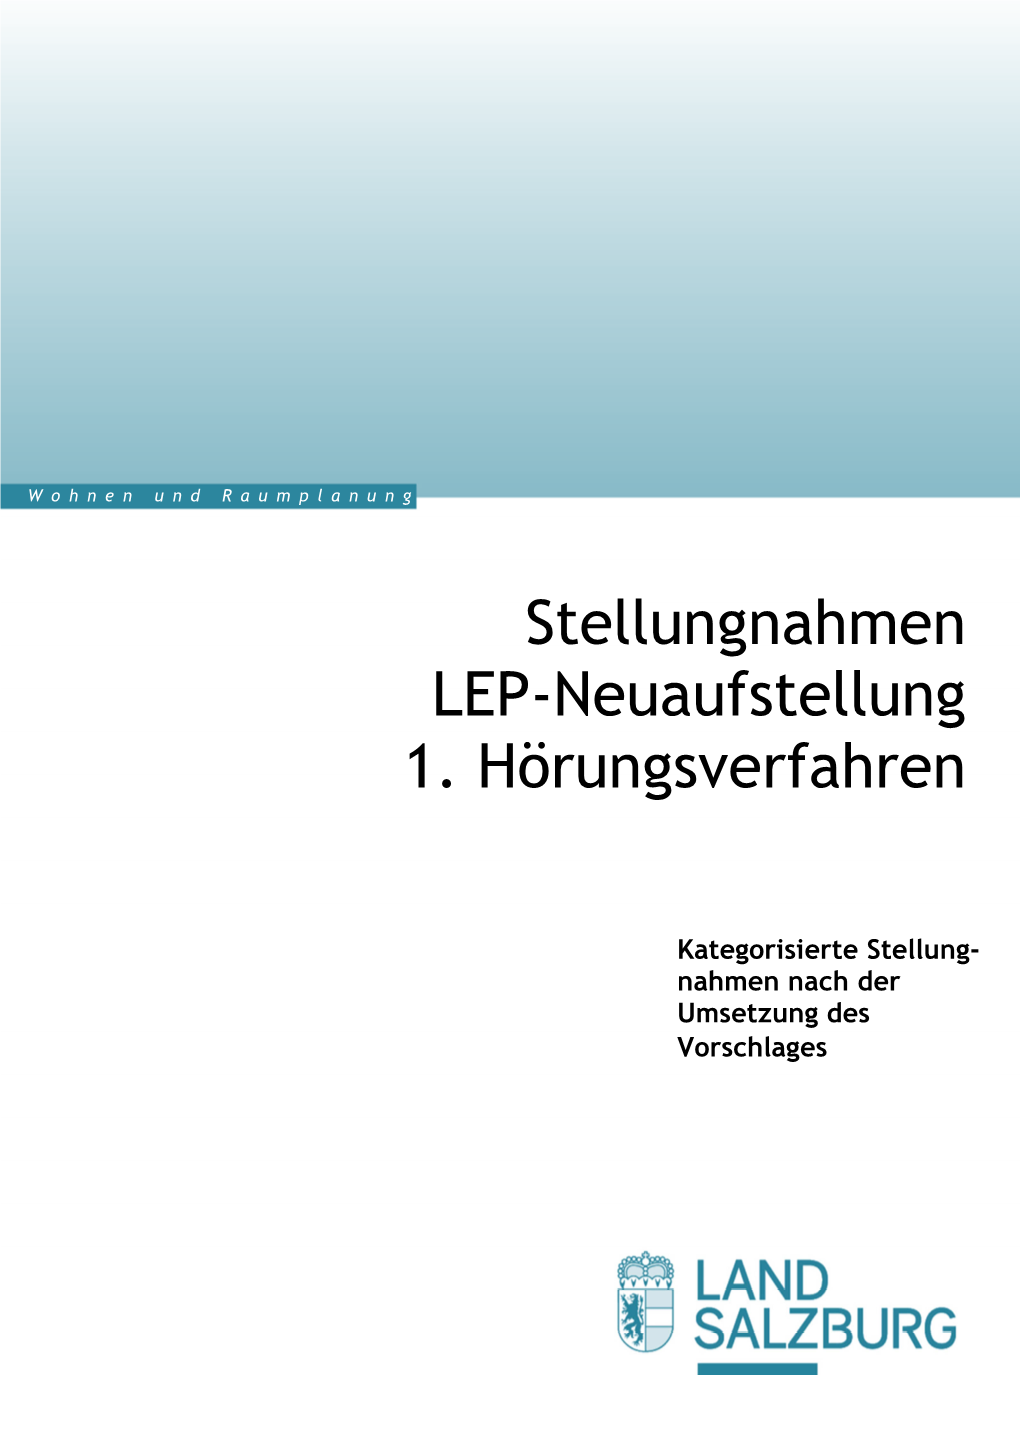 Stellungnahmen LEP-Neuaufstellung 1. Hörungsverfahren 2013 Und 2016